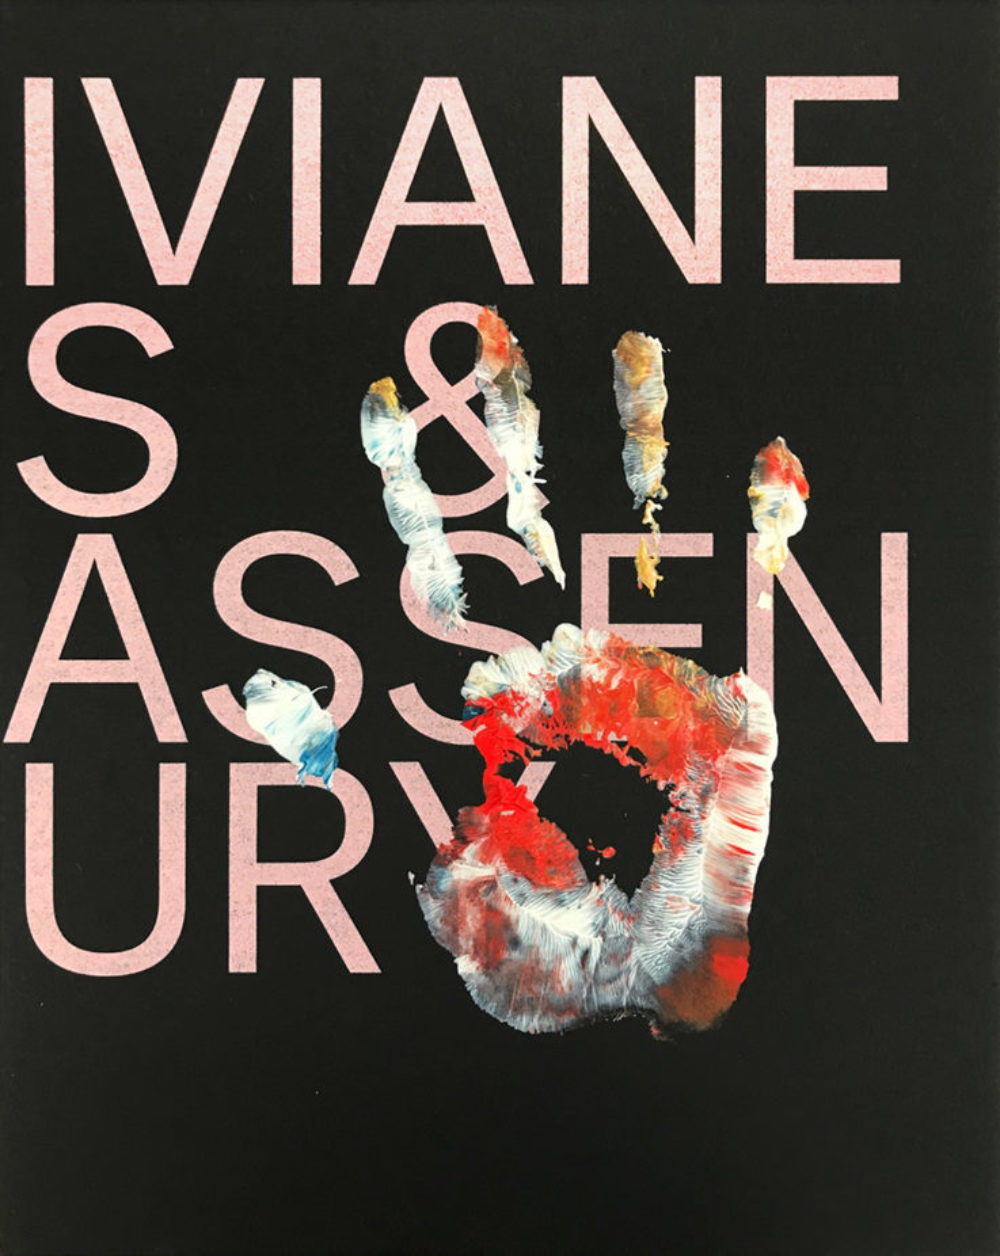 WASO – Viviane Sassen - We Folk